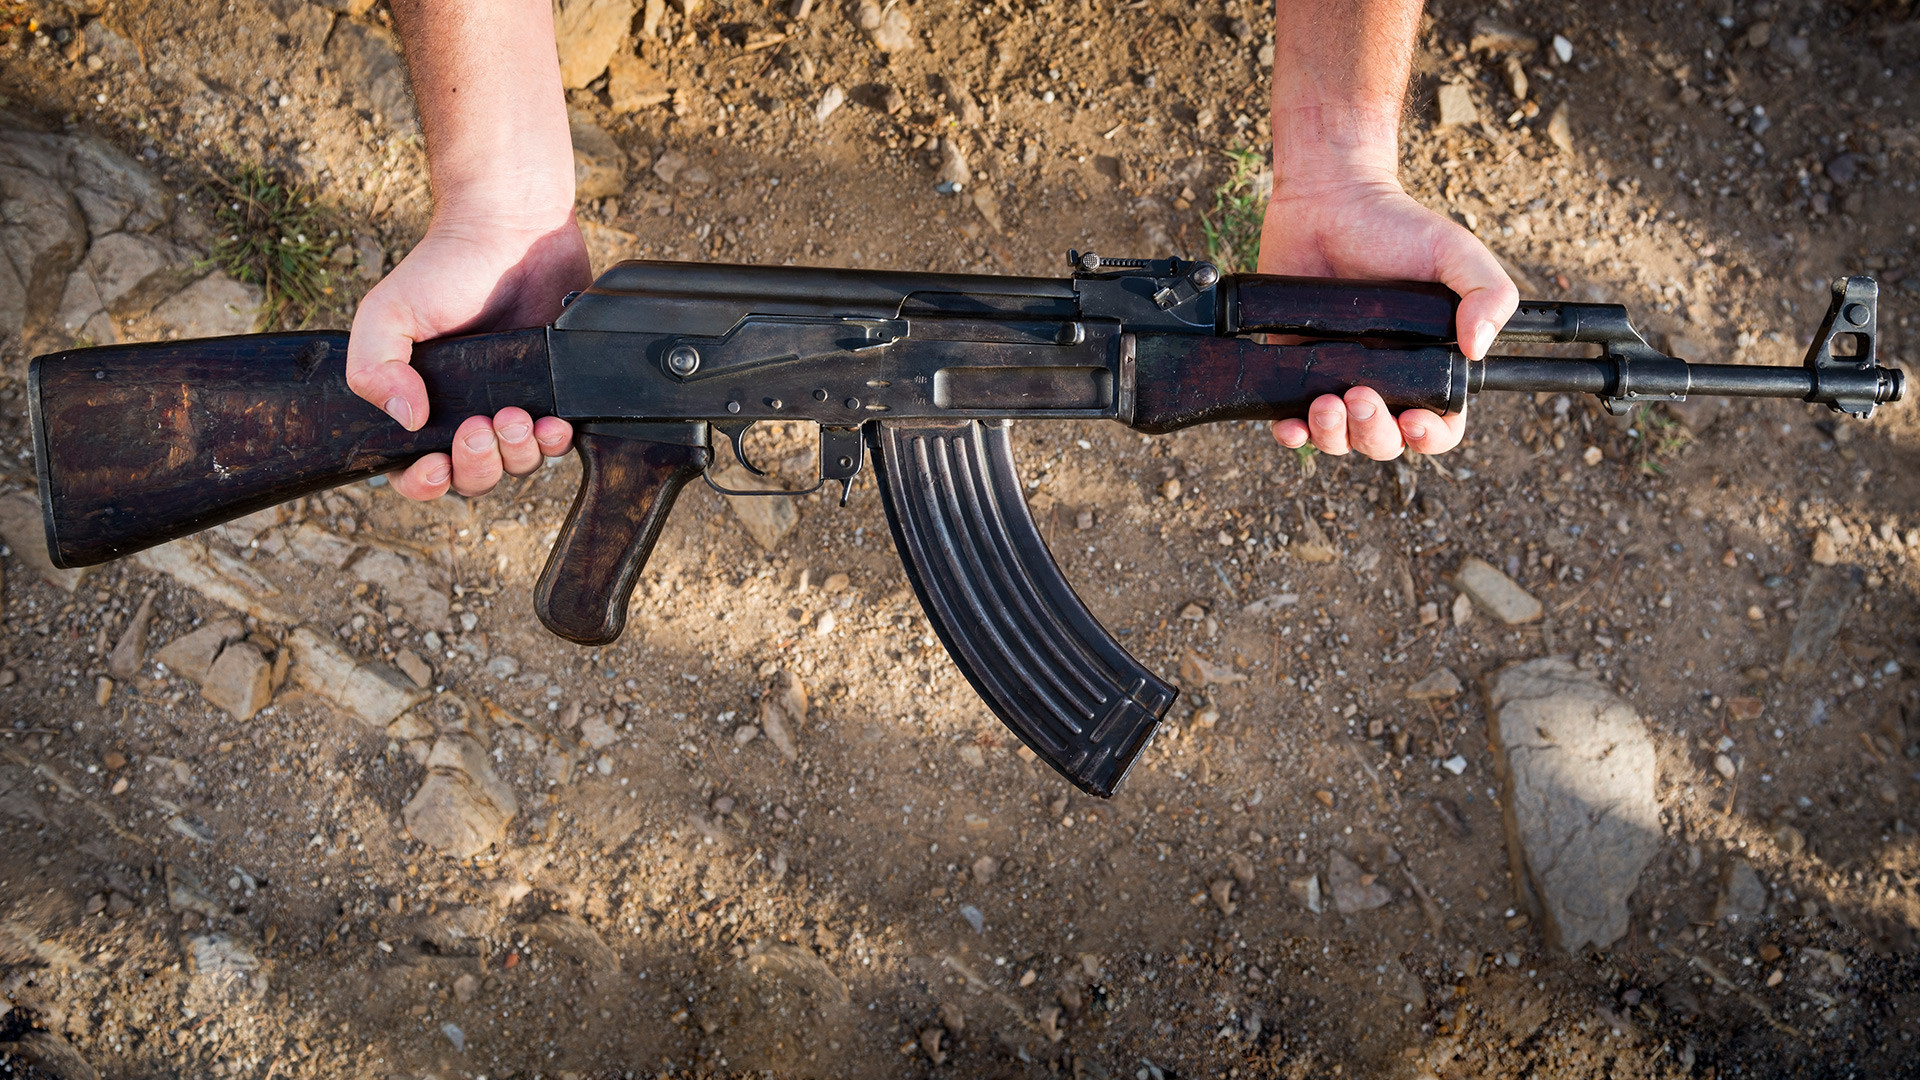 AK-47

